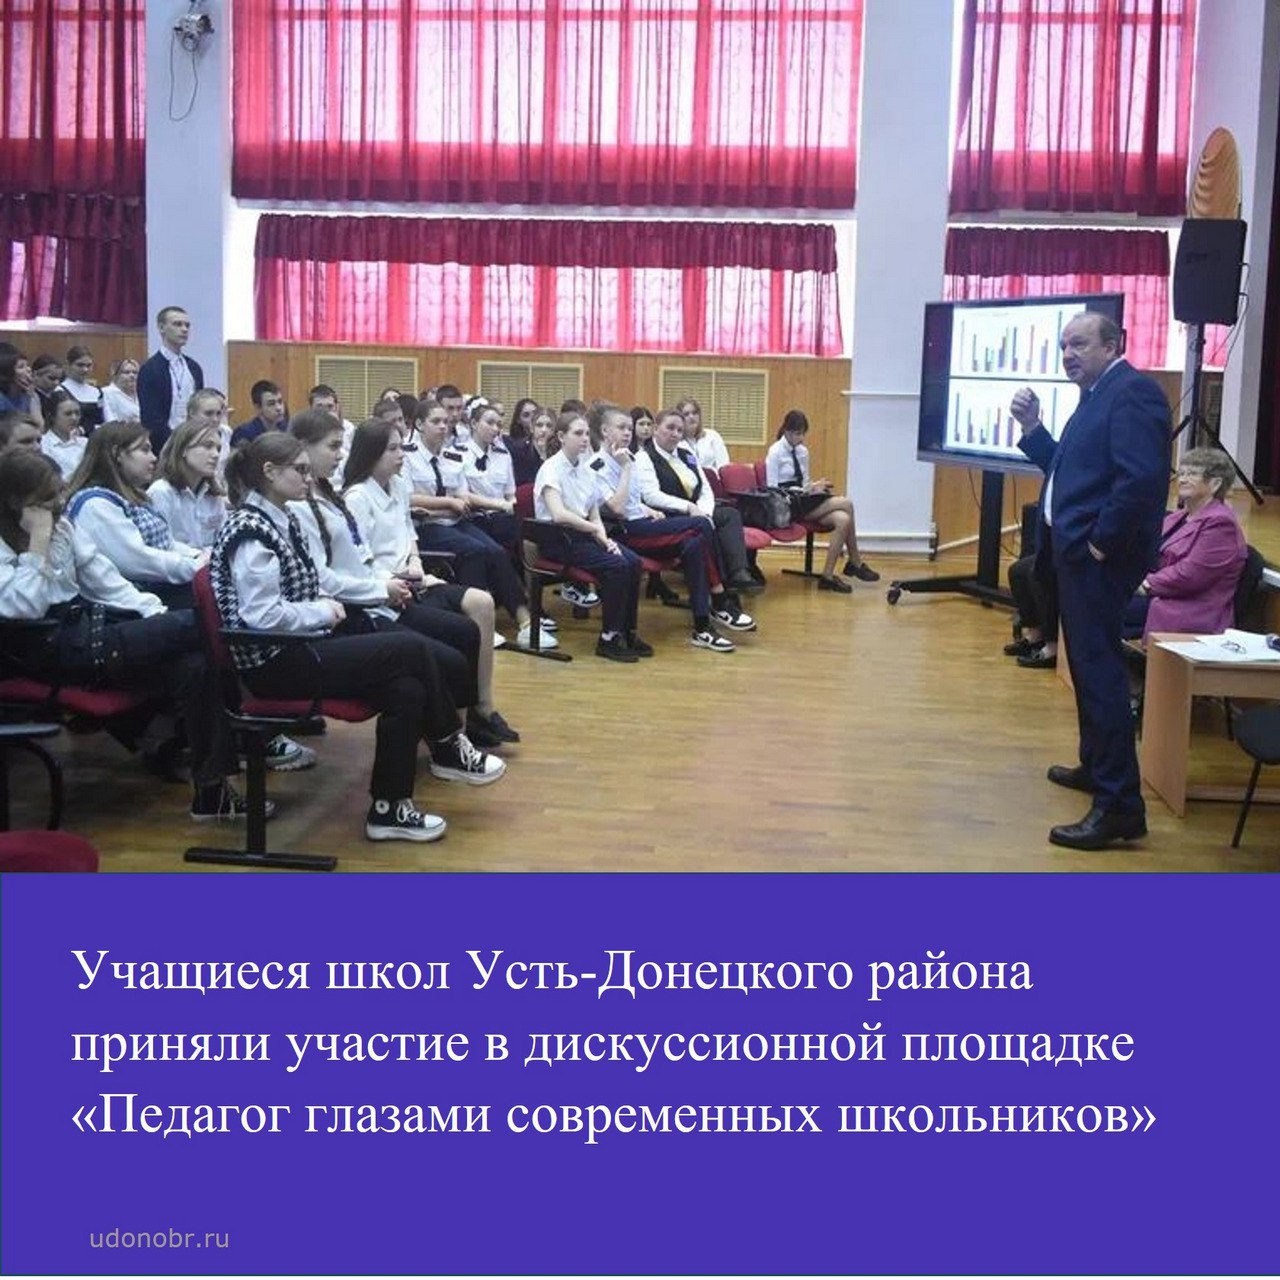 Учащиеся школ Усть-Донецкого района приняли участие в дискуссионной площадке «Педагог глазами современных школьников»